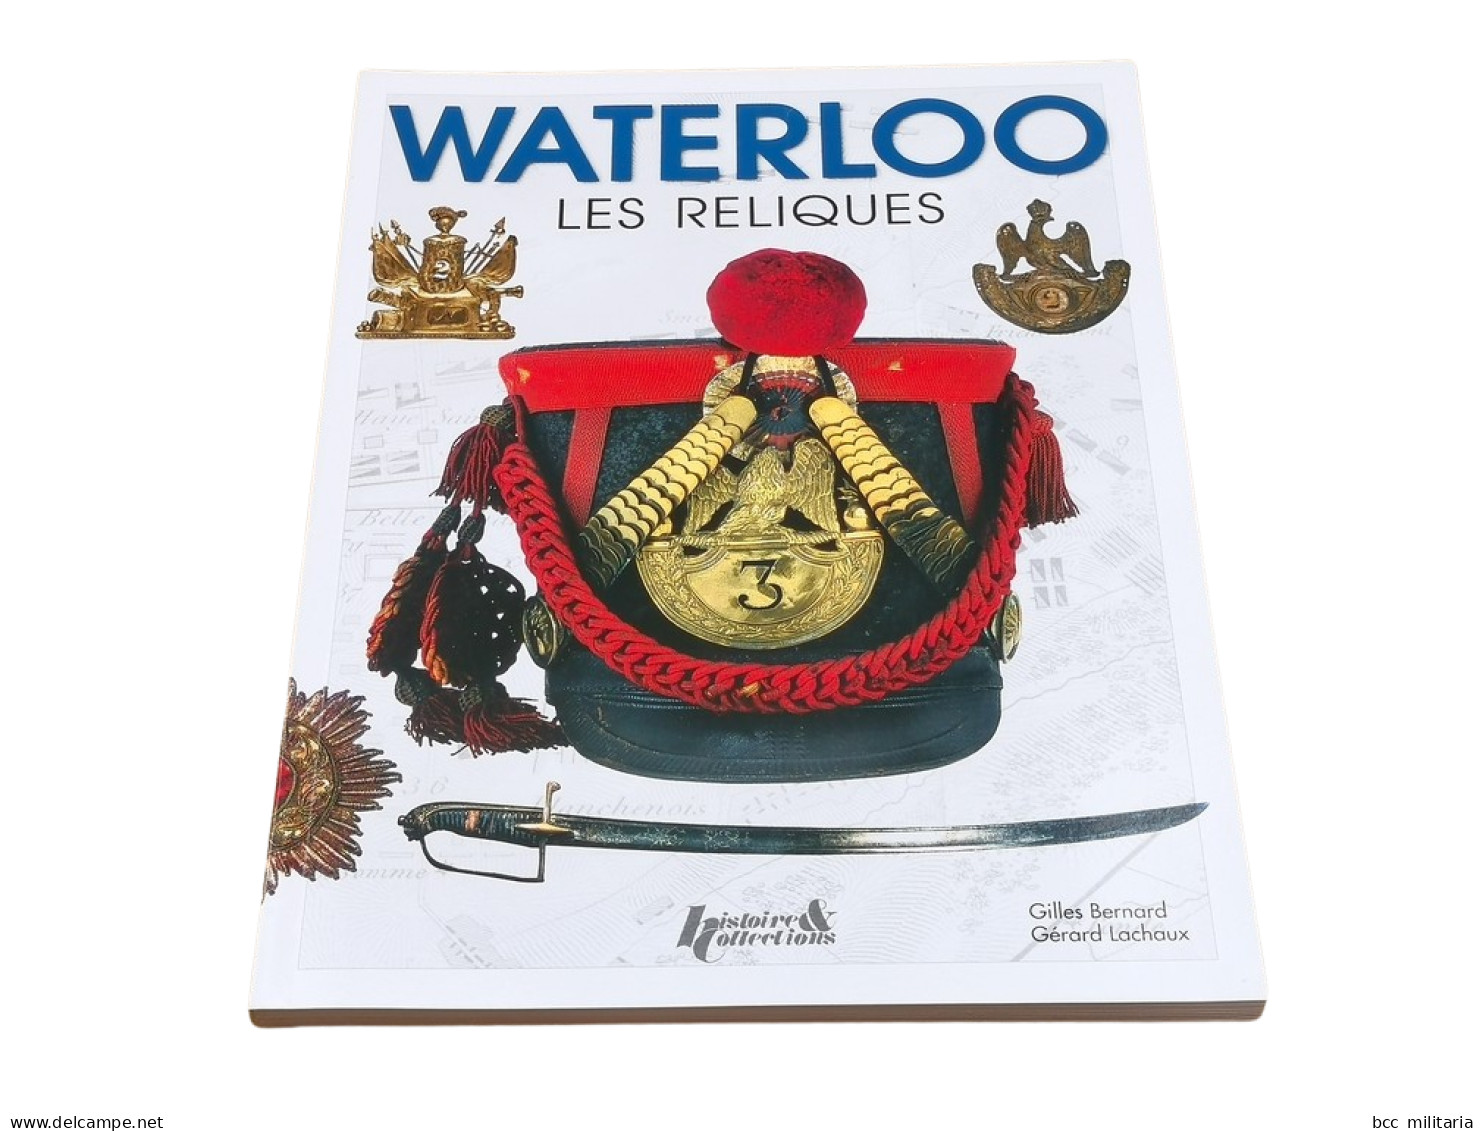 WATERLOO, LES RELIQUES Histoire Et Collections 128 Pages Livre Neuf - Französisch